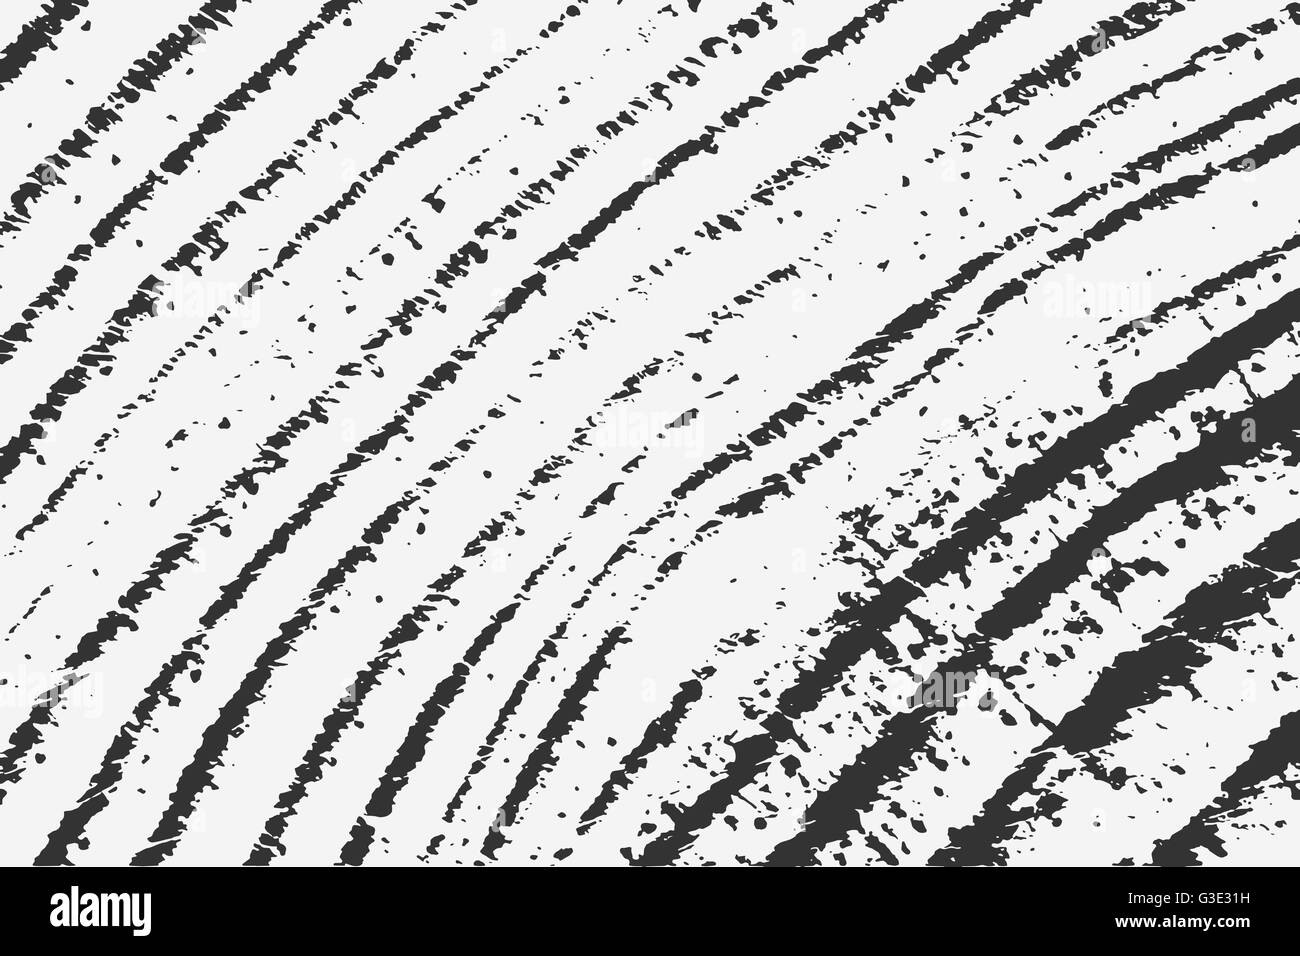 Abstract Grunge Hintergrund. Grunge Kiefer Baum Textur. Vektor-Illustration von schwarzen abstrakt Grunge Hintergrund für Ihr design Stock Vektor